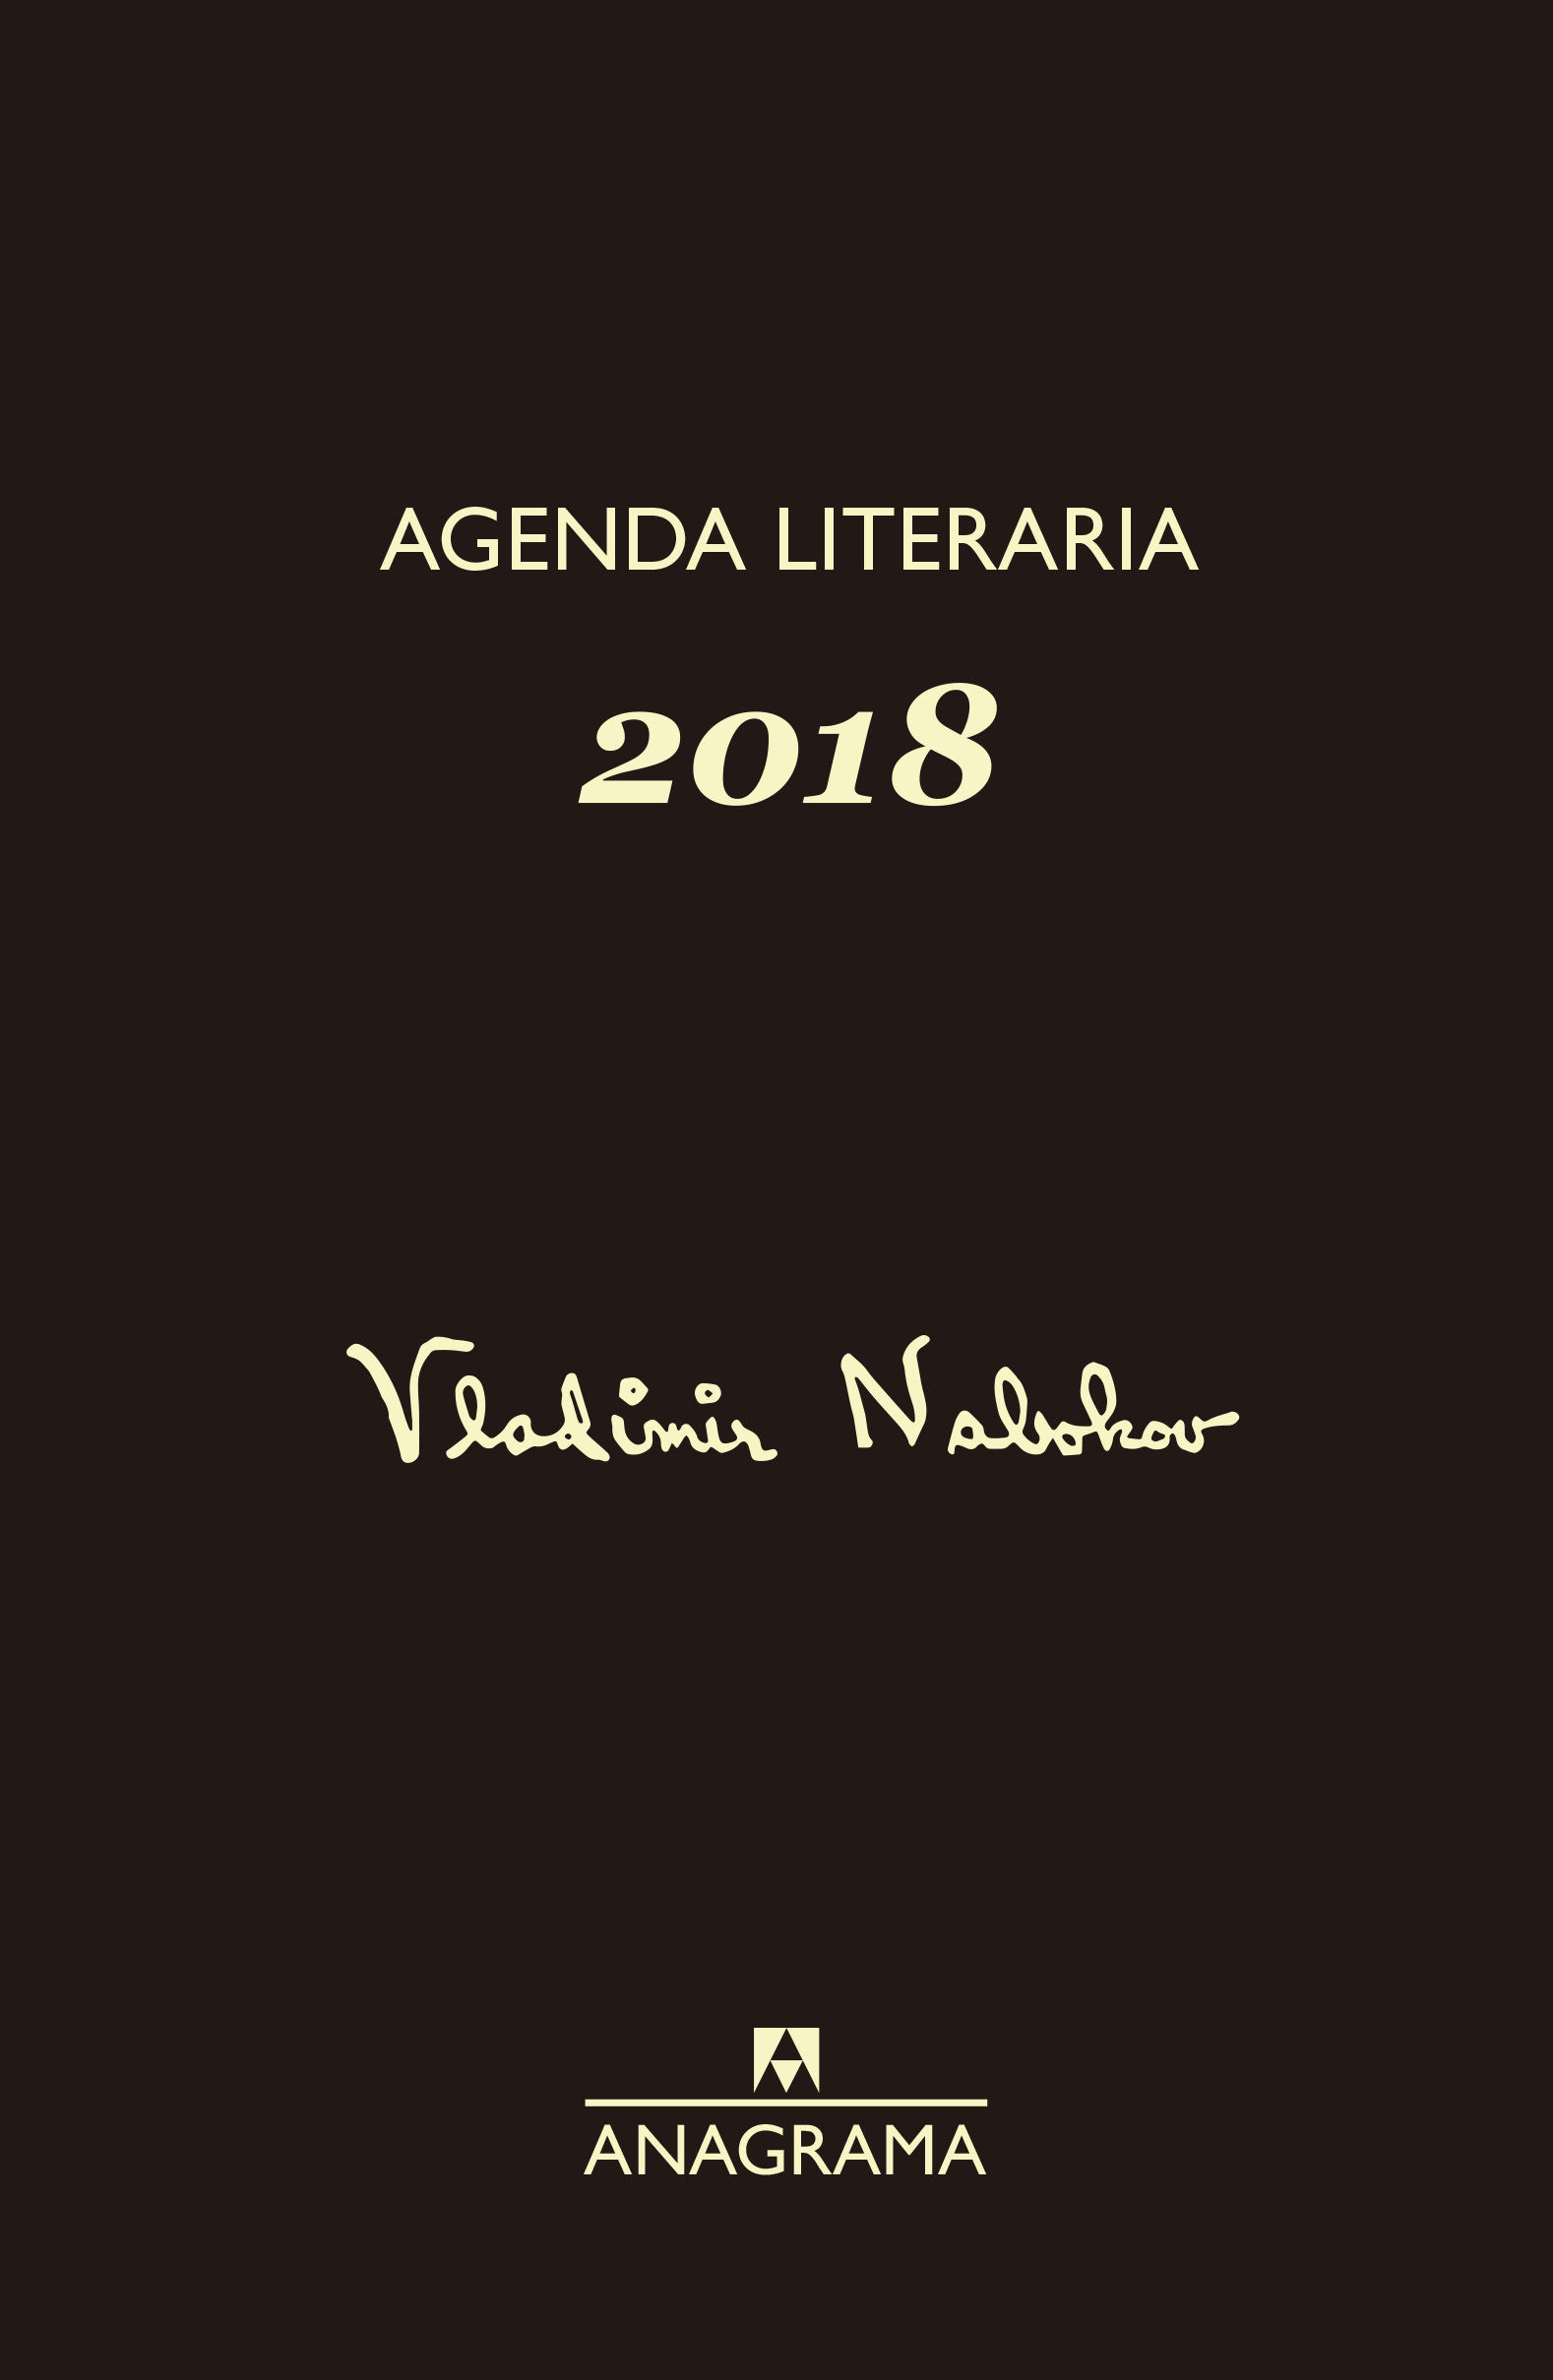 AGENDA NABOKOV 2018. 